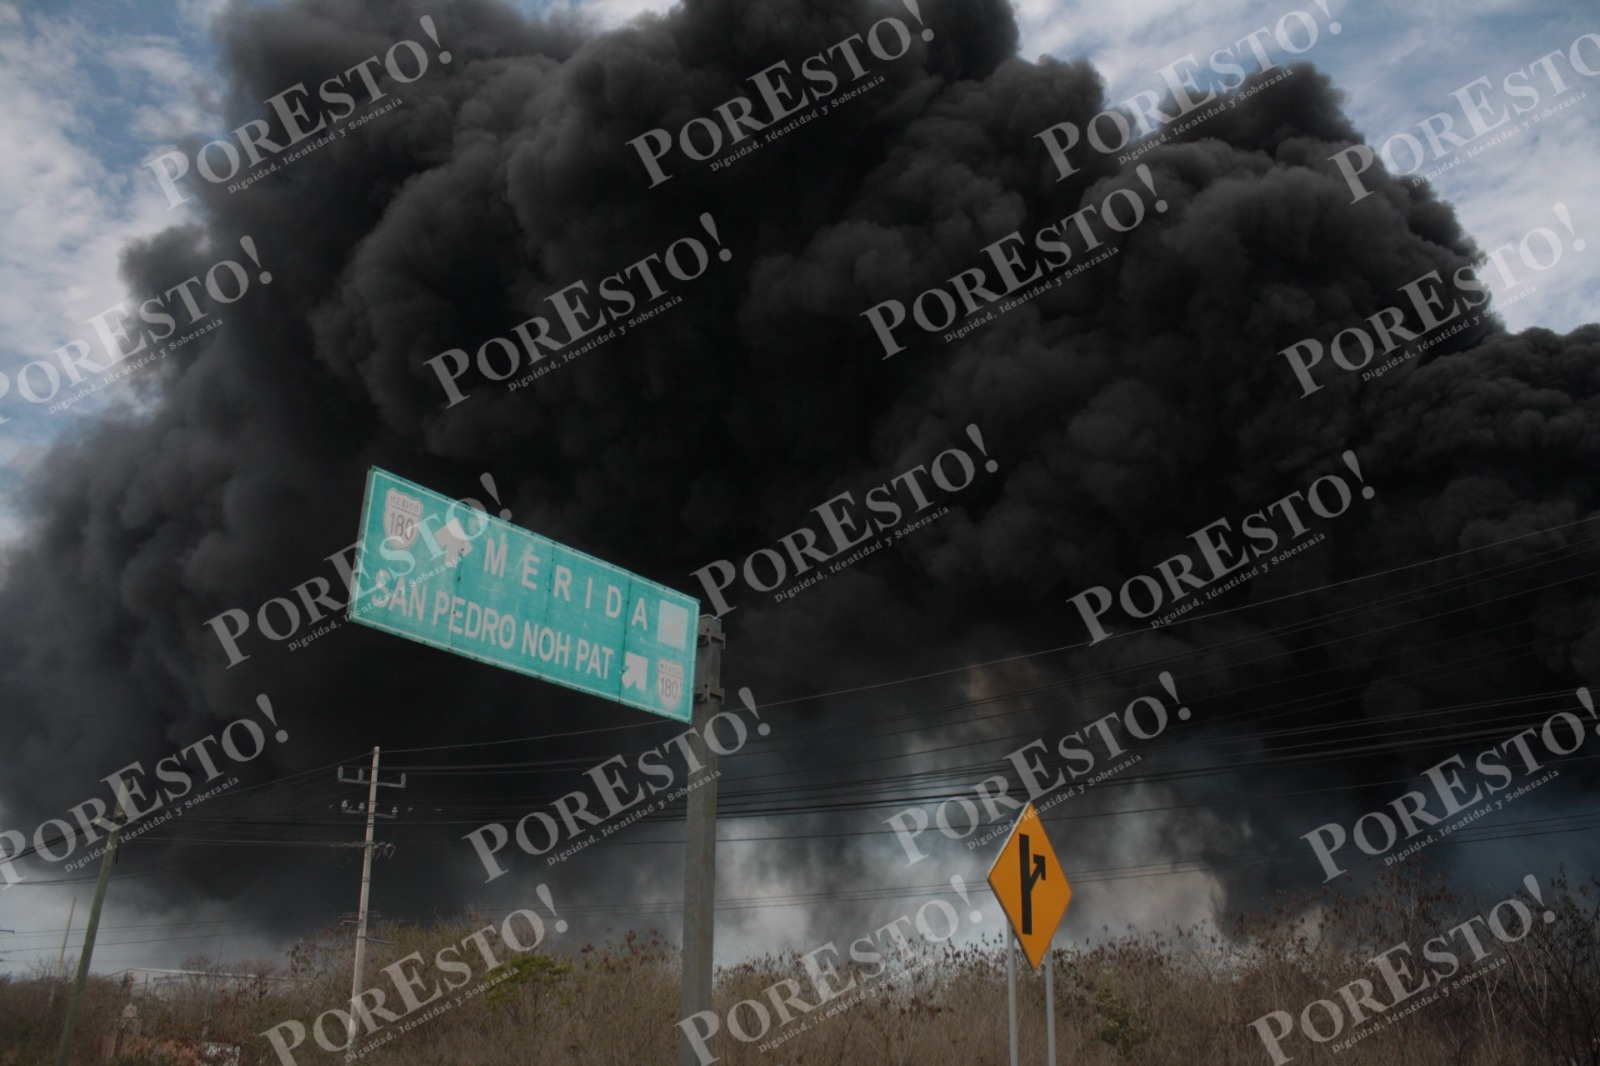 El incendio se registró en San Pedro Noh Pat, Kanasín